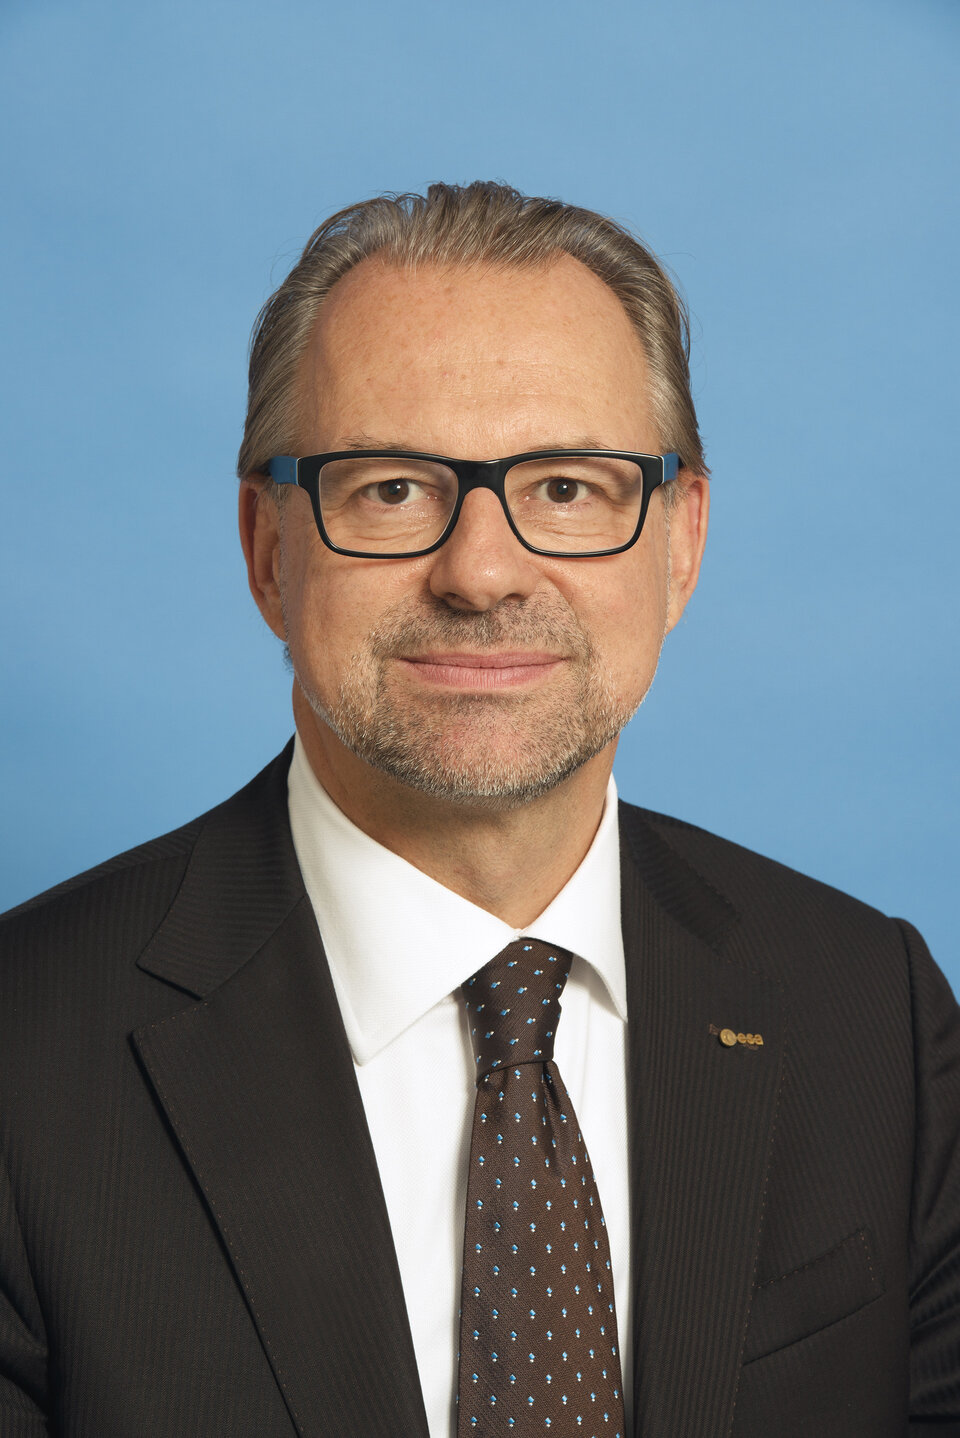 Josef Aschbacher, Directeur des programmes d'observation de la Terre de l'ESA